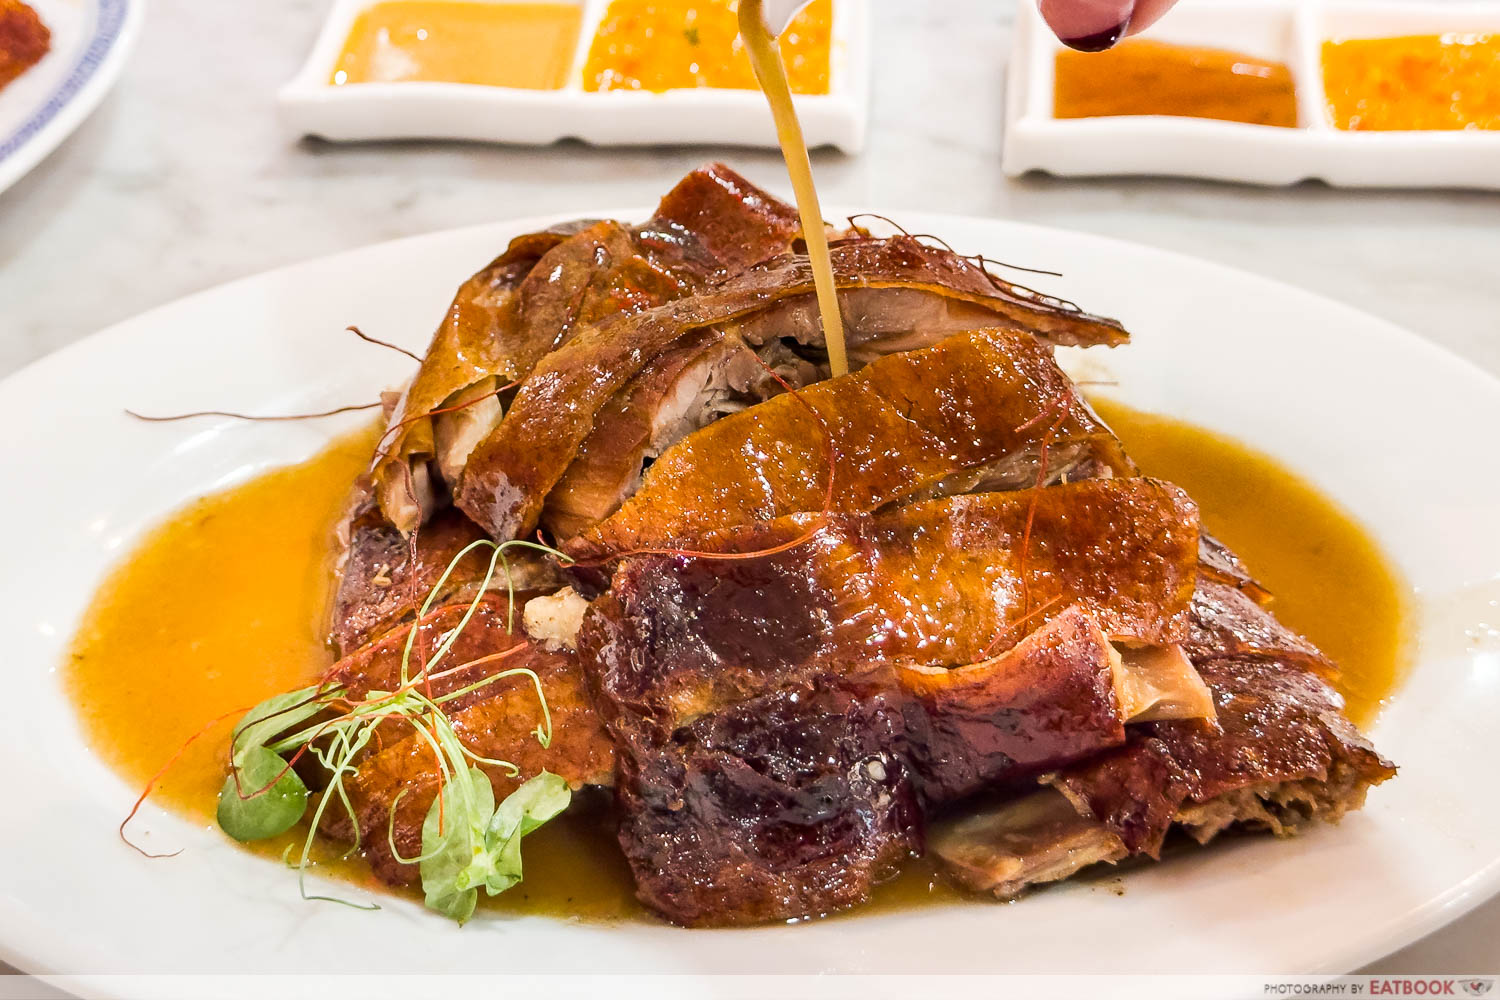 laifaba - roast duck with gravy